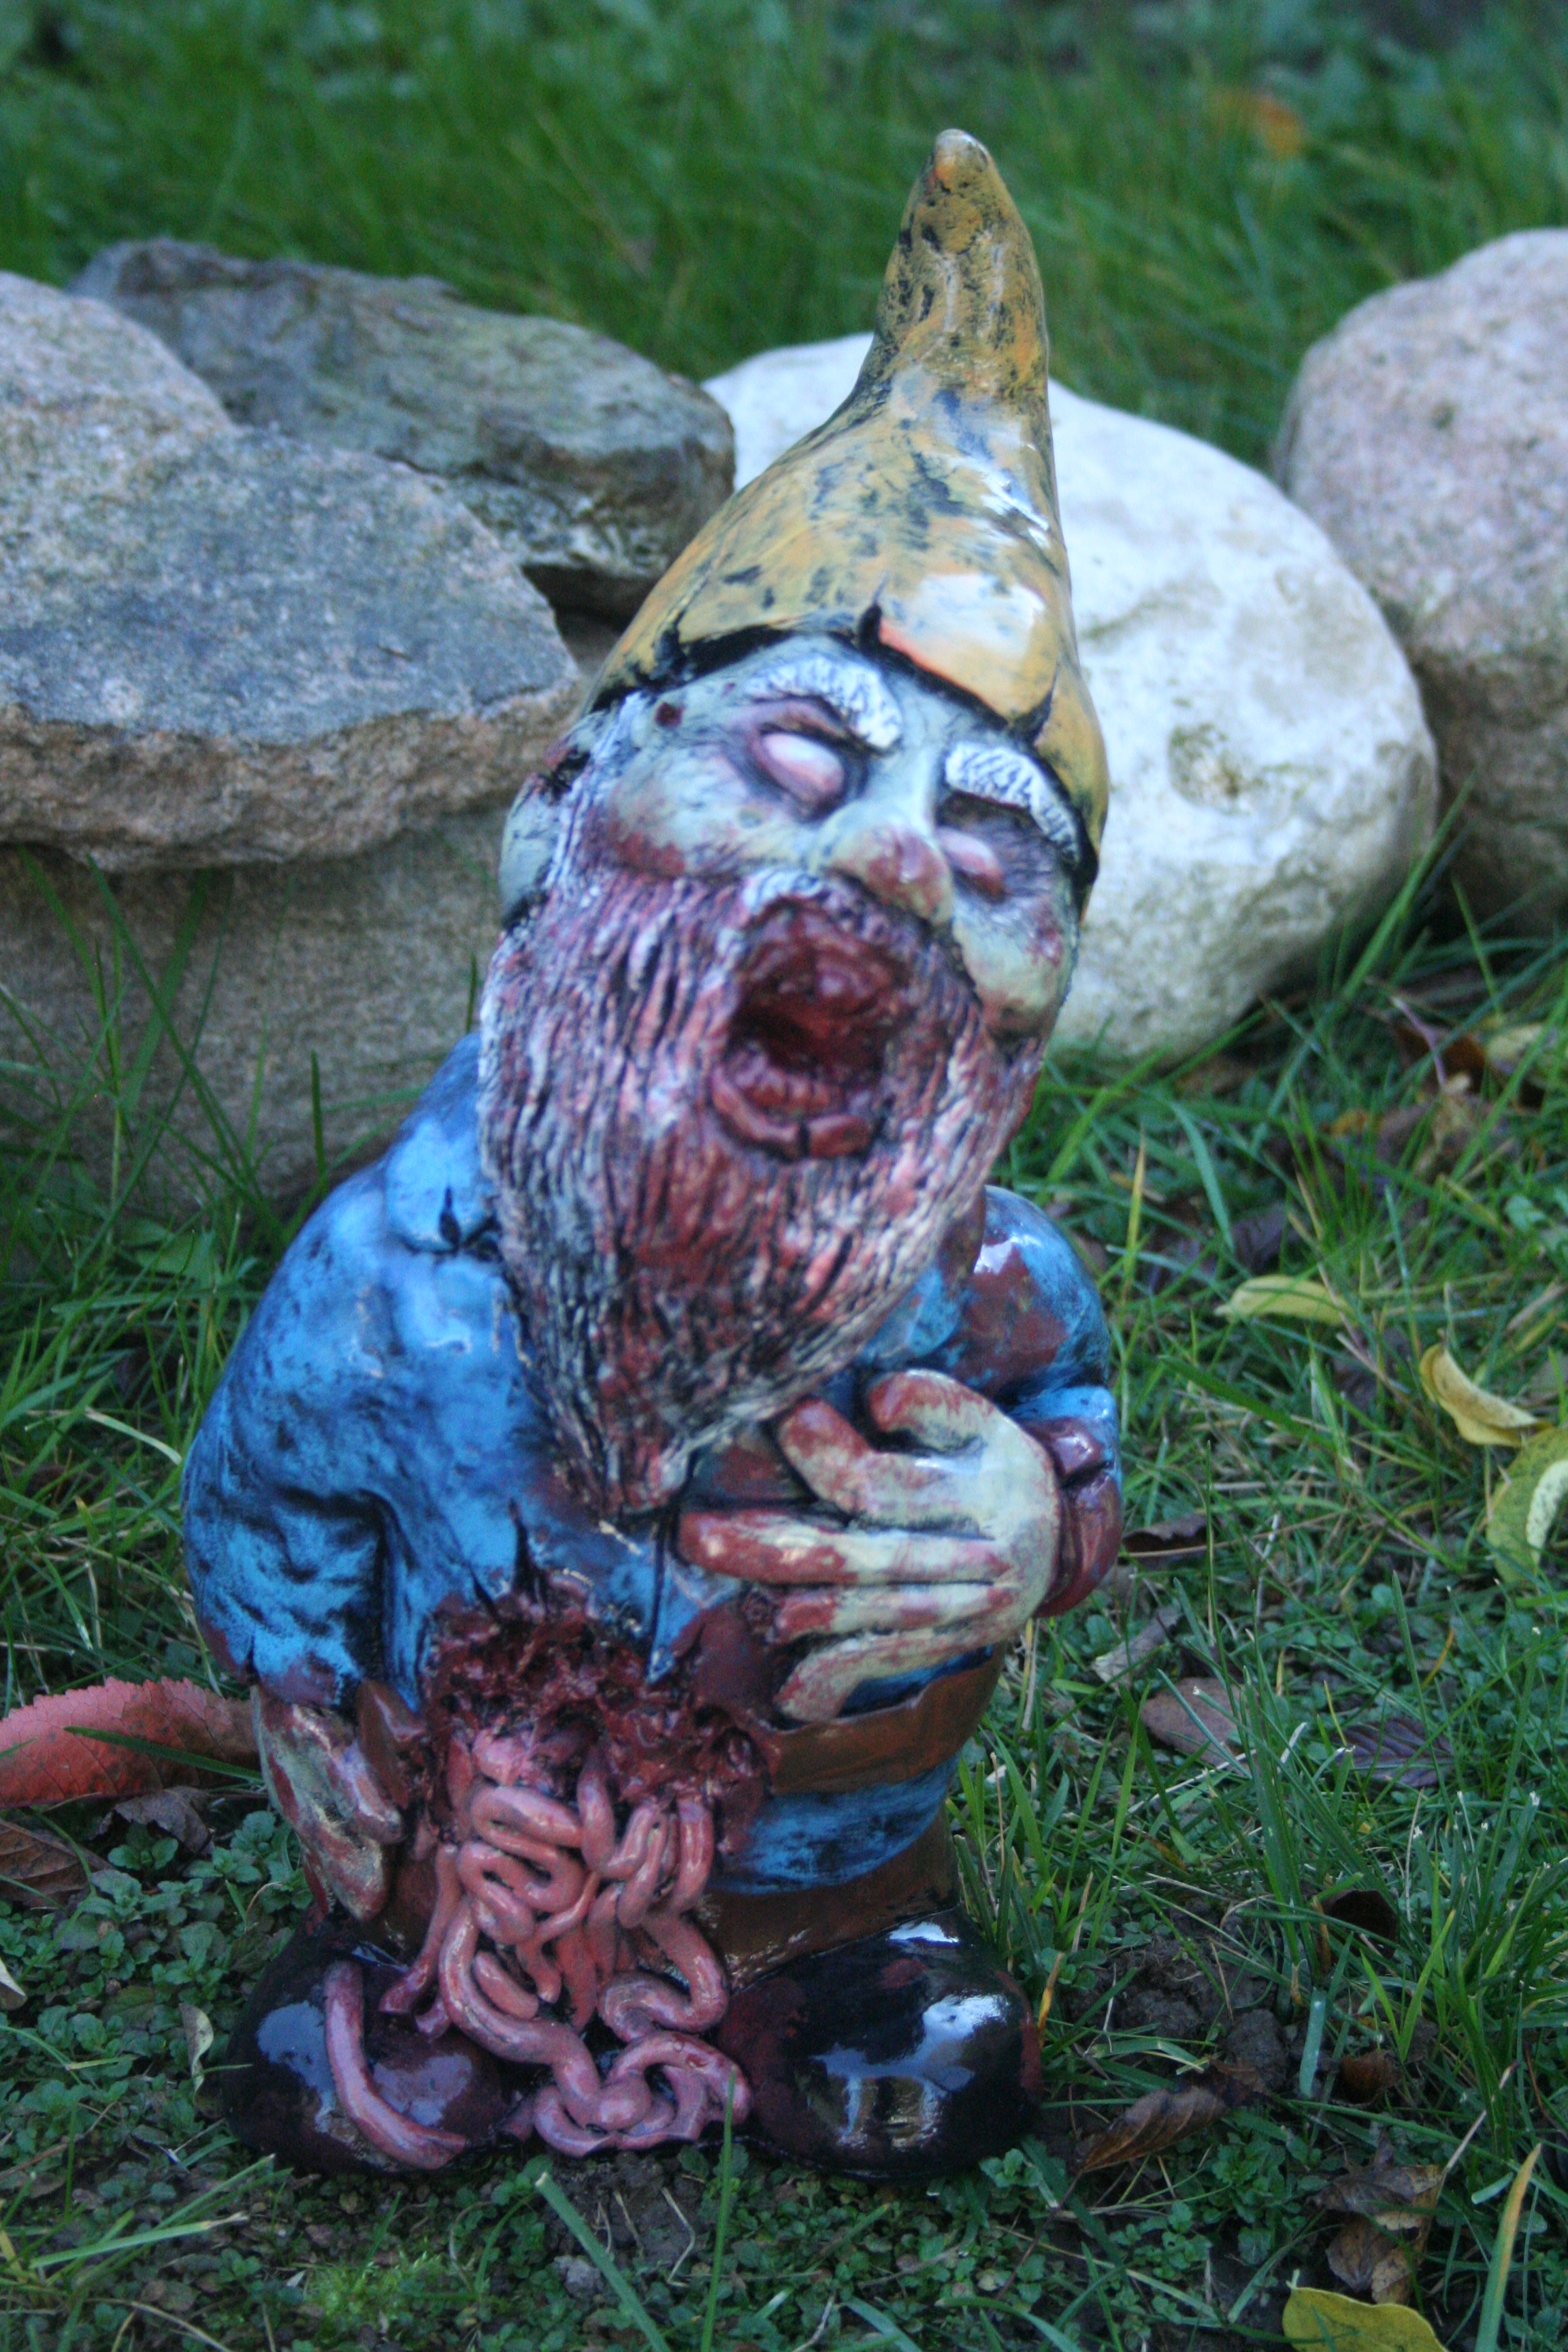 walking dead gnomes santa corpse the zombie gnome